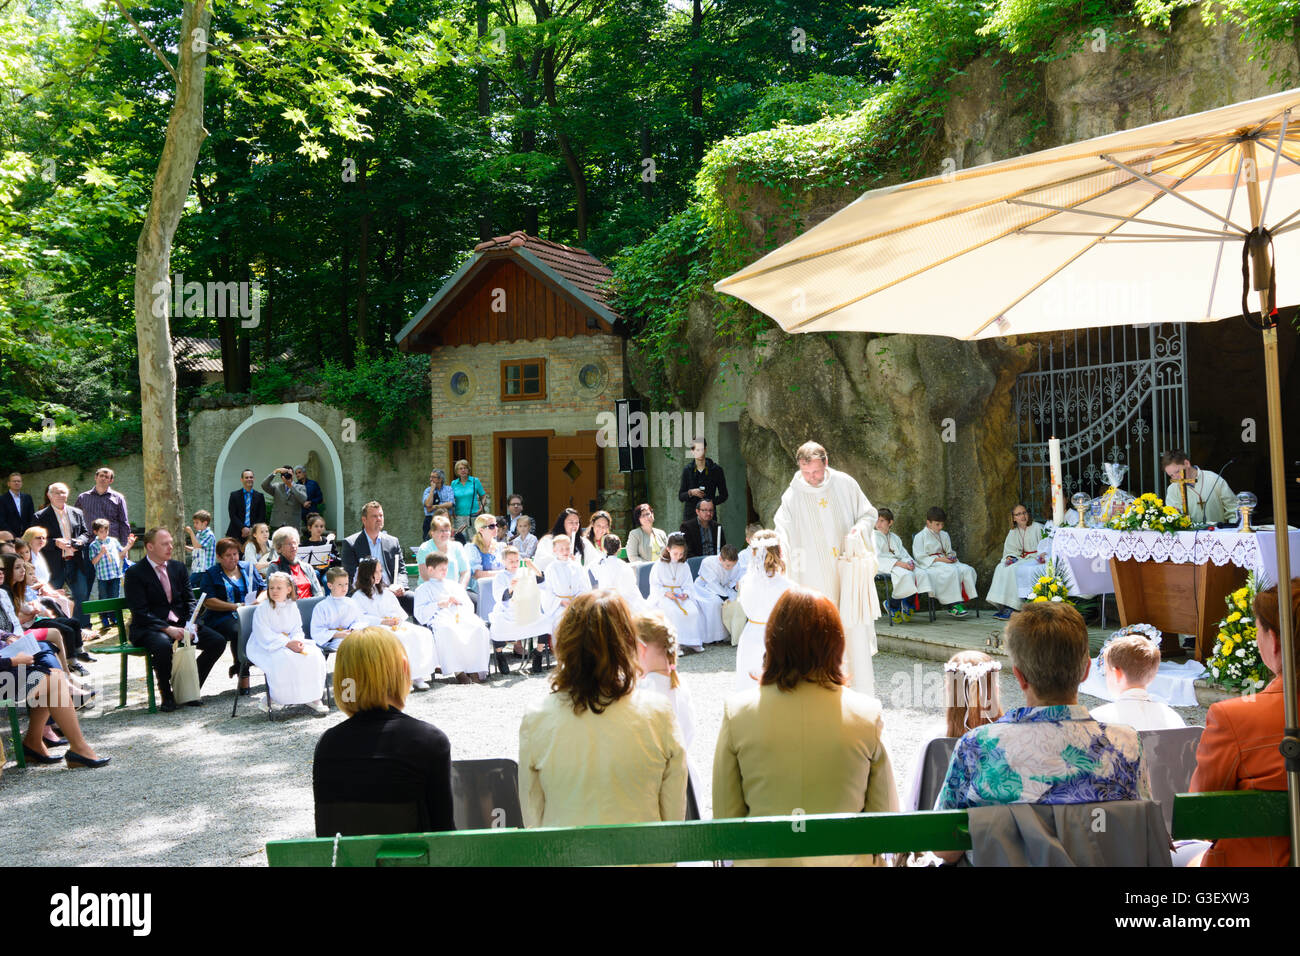 Grotte de Lourdes dans la région de Maria Ellend à une première communion, l'Autriche, Niederösterreich, Autriche, Donau, Haslau-Maria Ellend Banque D'Images